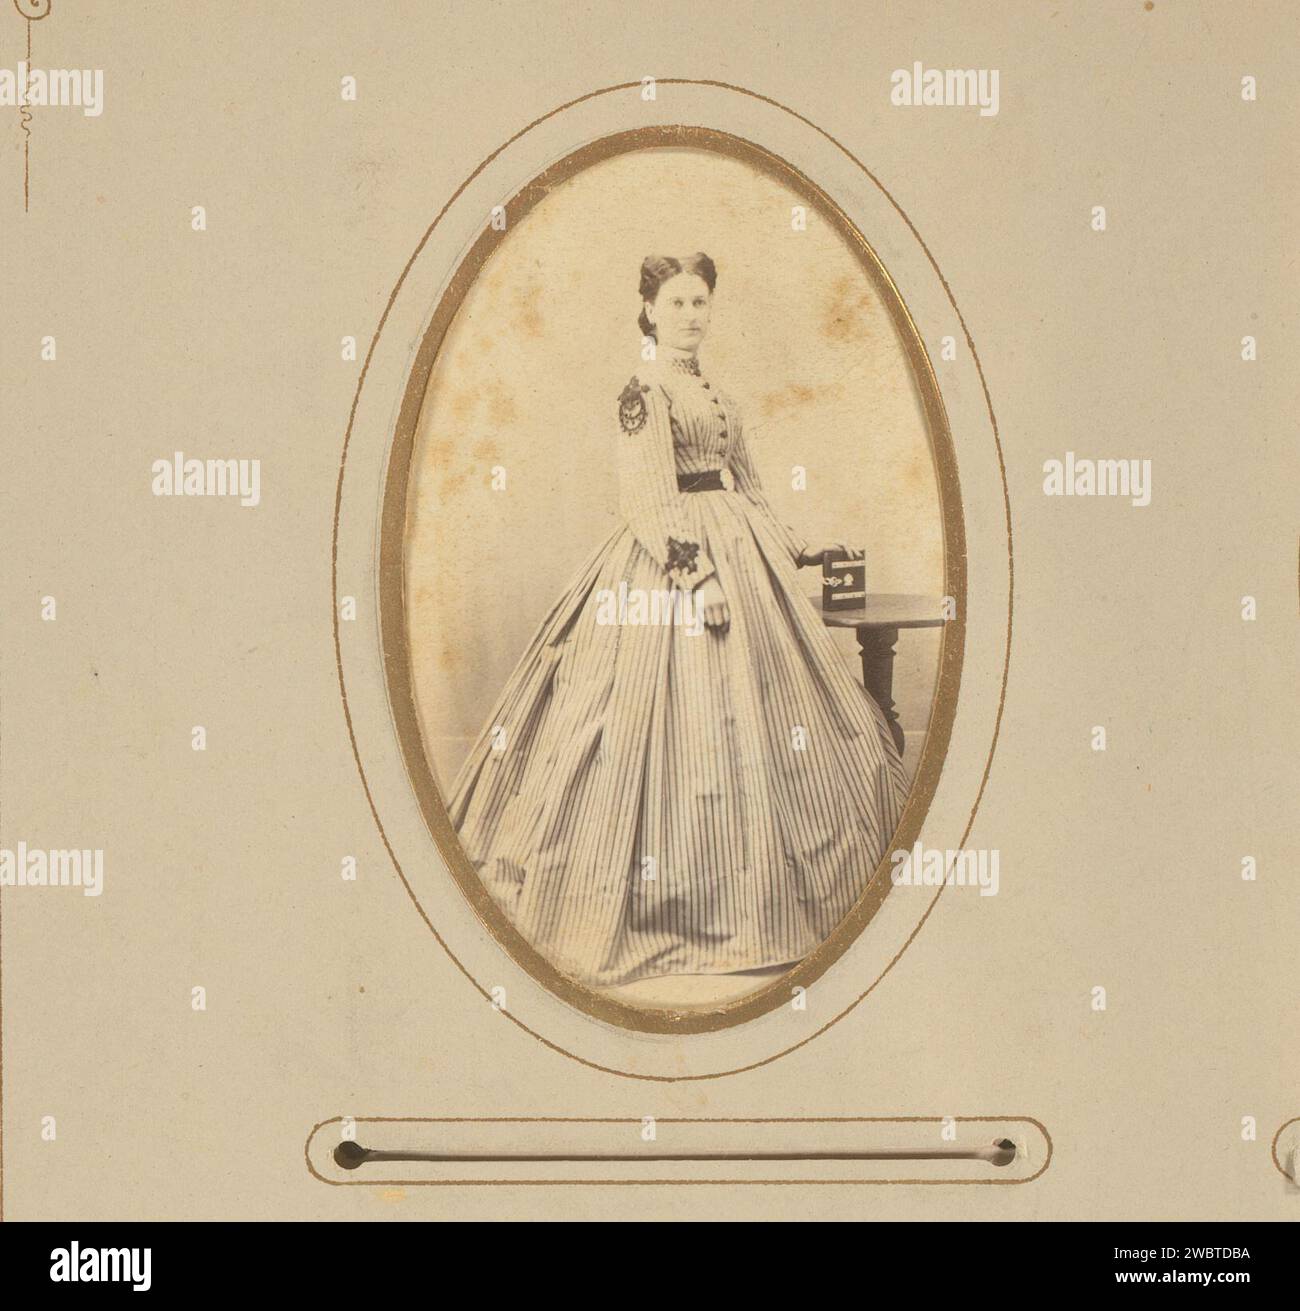 Portrait d'une femme debout avec une main sur un livre, J. Remde, 1850 - 1880 Photographie. Carte de visite cette photo fait partie d'un album. Carton Ironach. Support photographique albumen print personnes historiques - BB - femme. livre Banque D'Images